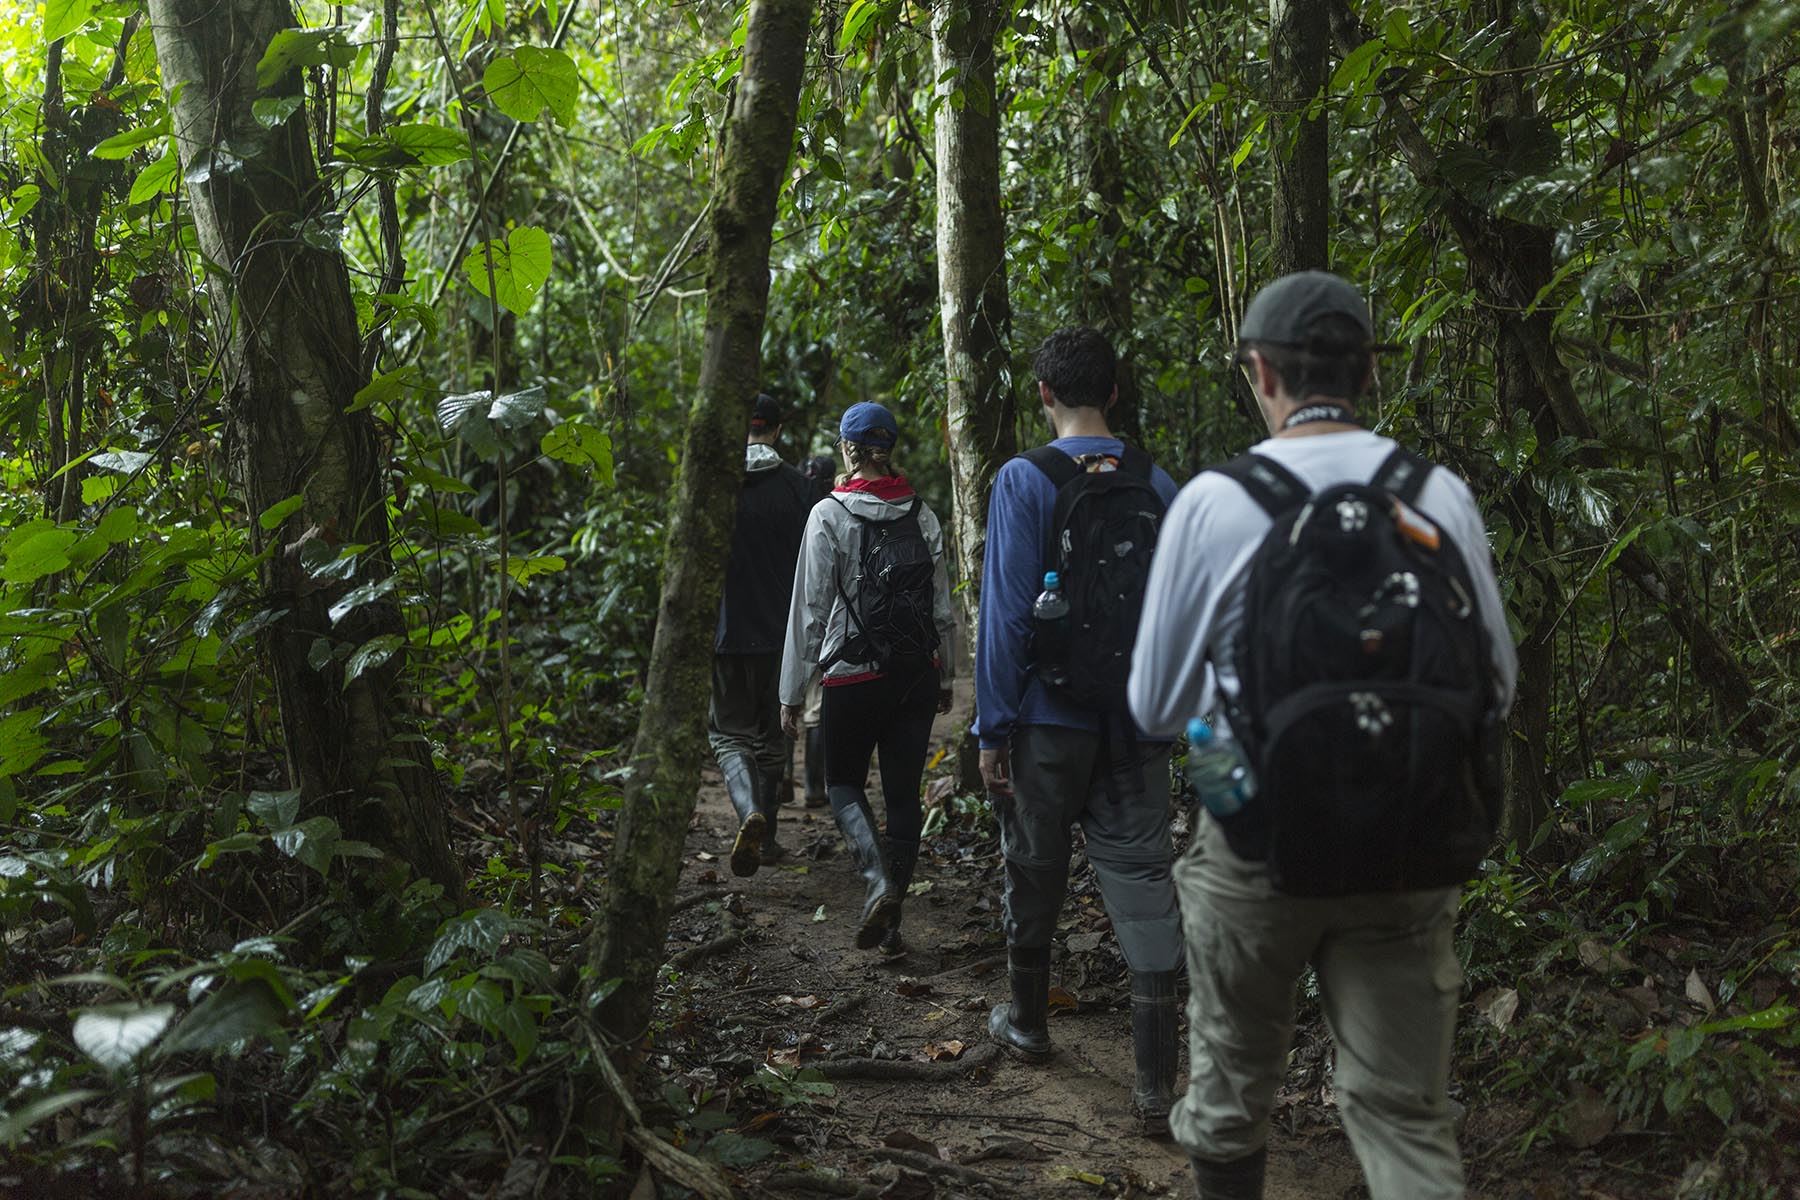 La tercera propuesta finalista está liderada por Rainforest Expeditions, a través de su proyecto Wired Amazon, que busca obtener conocimientos sobre la fauna y proteger el medio ambiente en zonas como la Reserva Nacional Tambopata y el Parque Nacional Bahuaja Sonene.